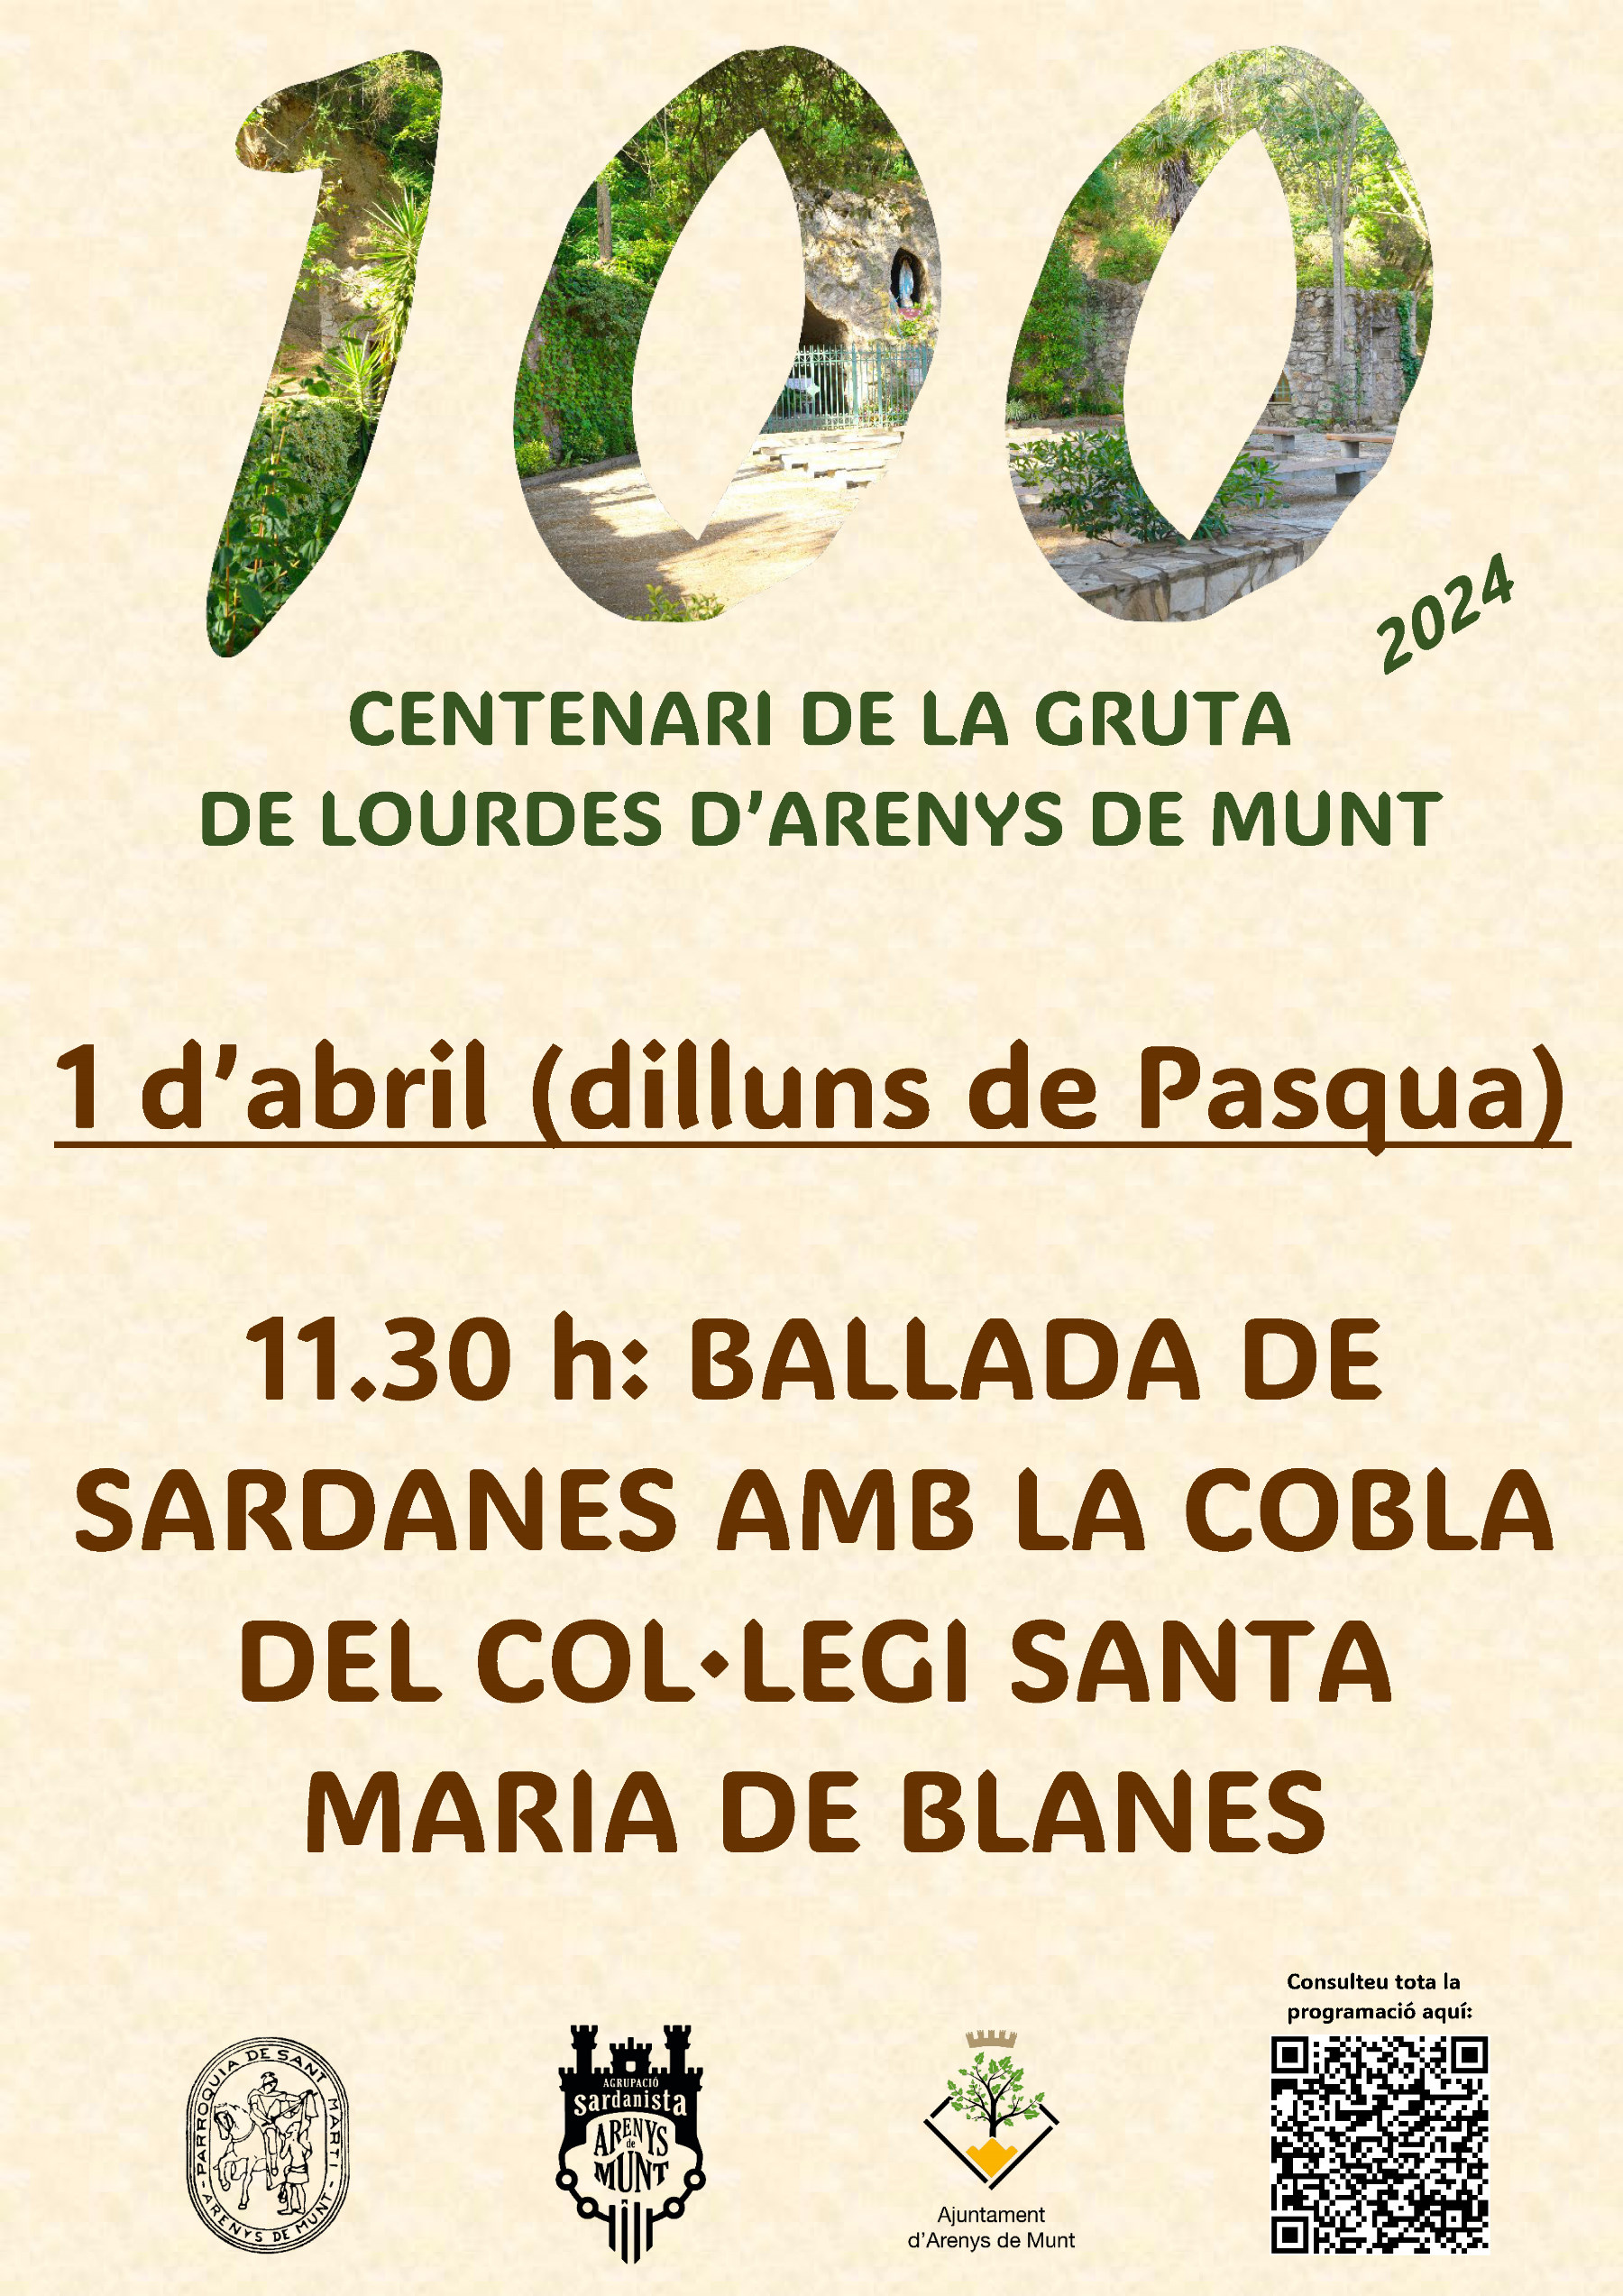 Centenari Gruta de Lourdes: ballada de sardanes